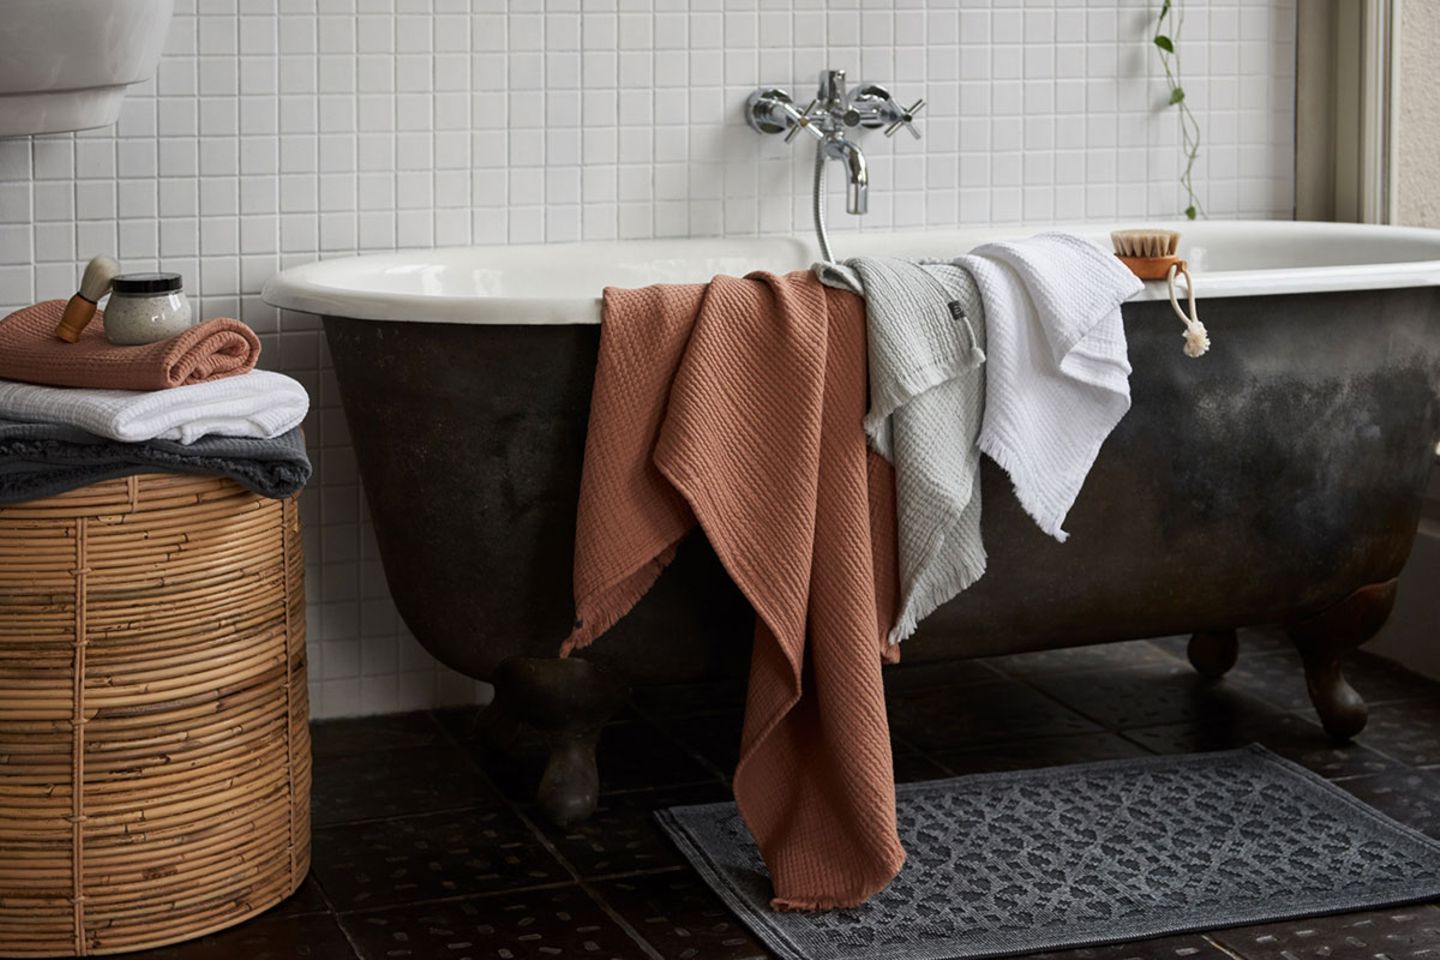 Musselin-Handtücher in Terracotta und Grau auf dem Rand einer Badewanne liegend